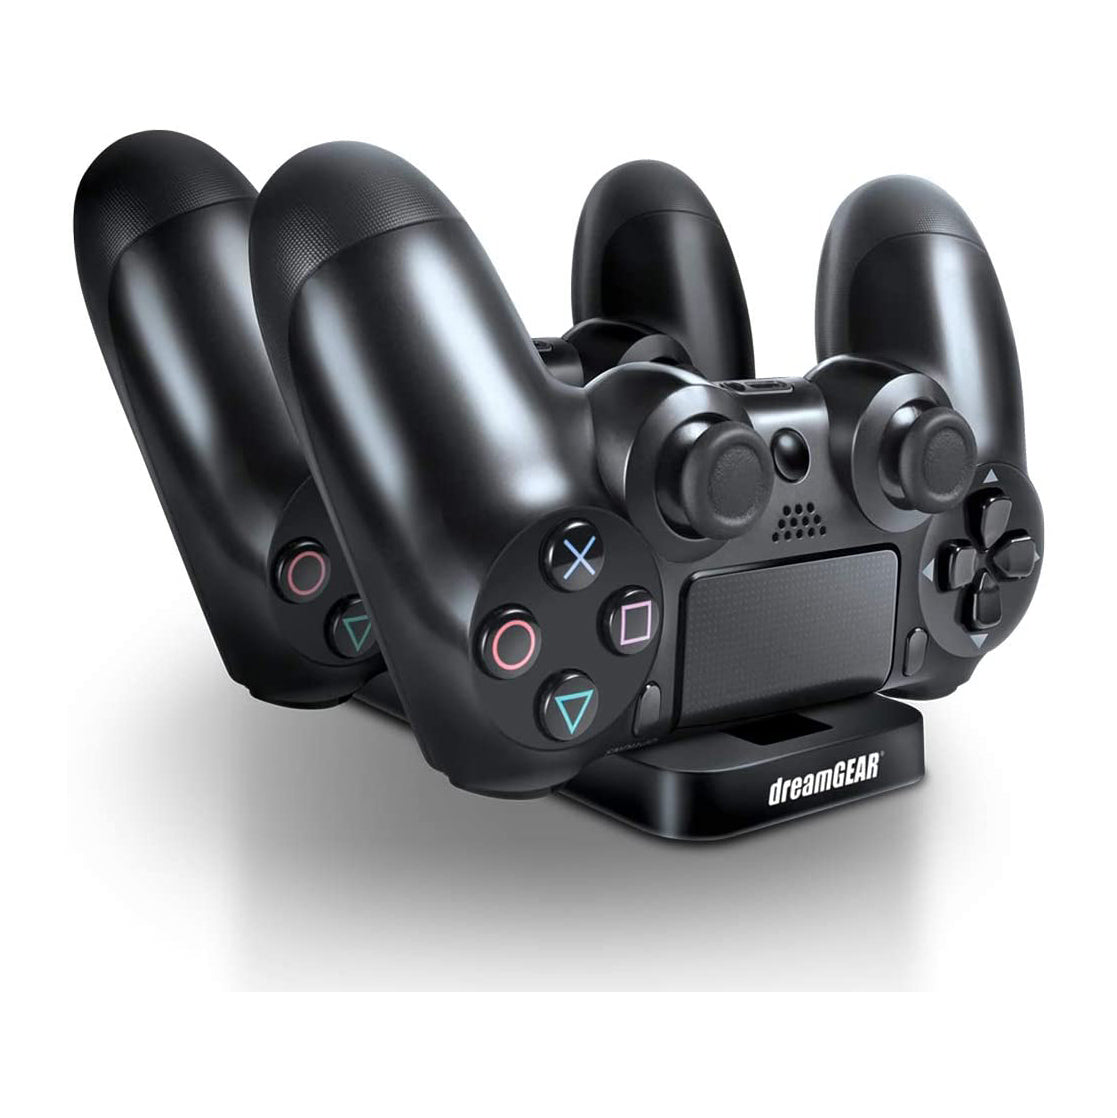 Soporte de carga para Playstation 4 Dreamgear DGPS4-6432, adaptador, negro - Multimax